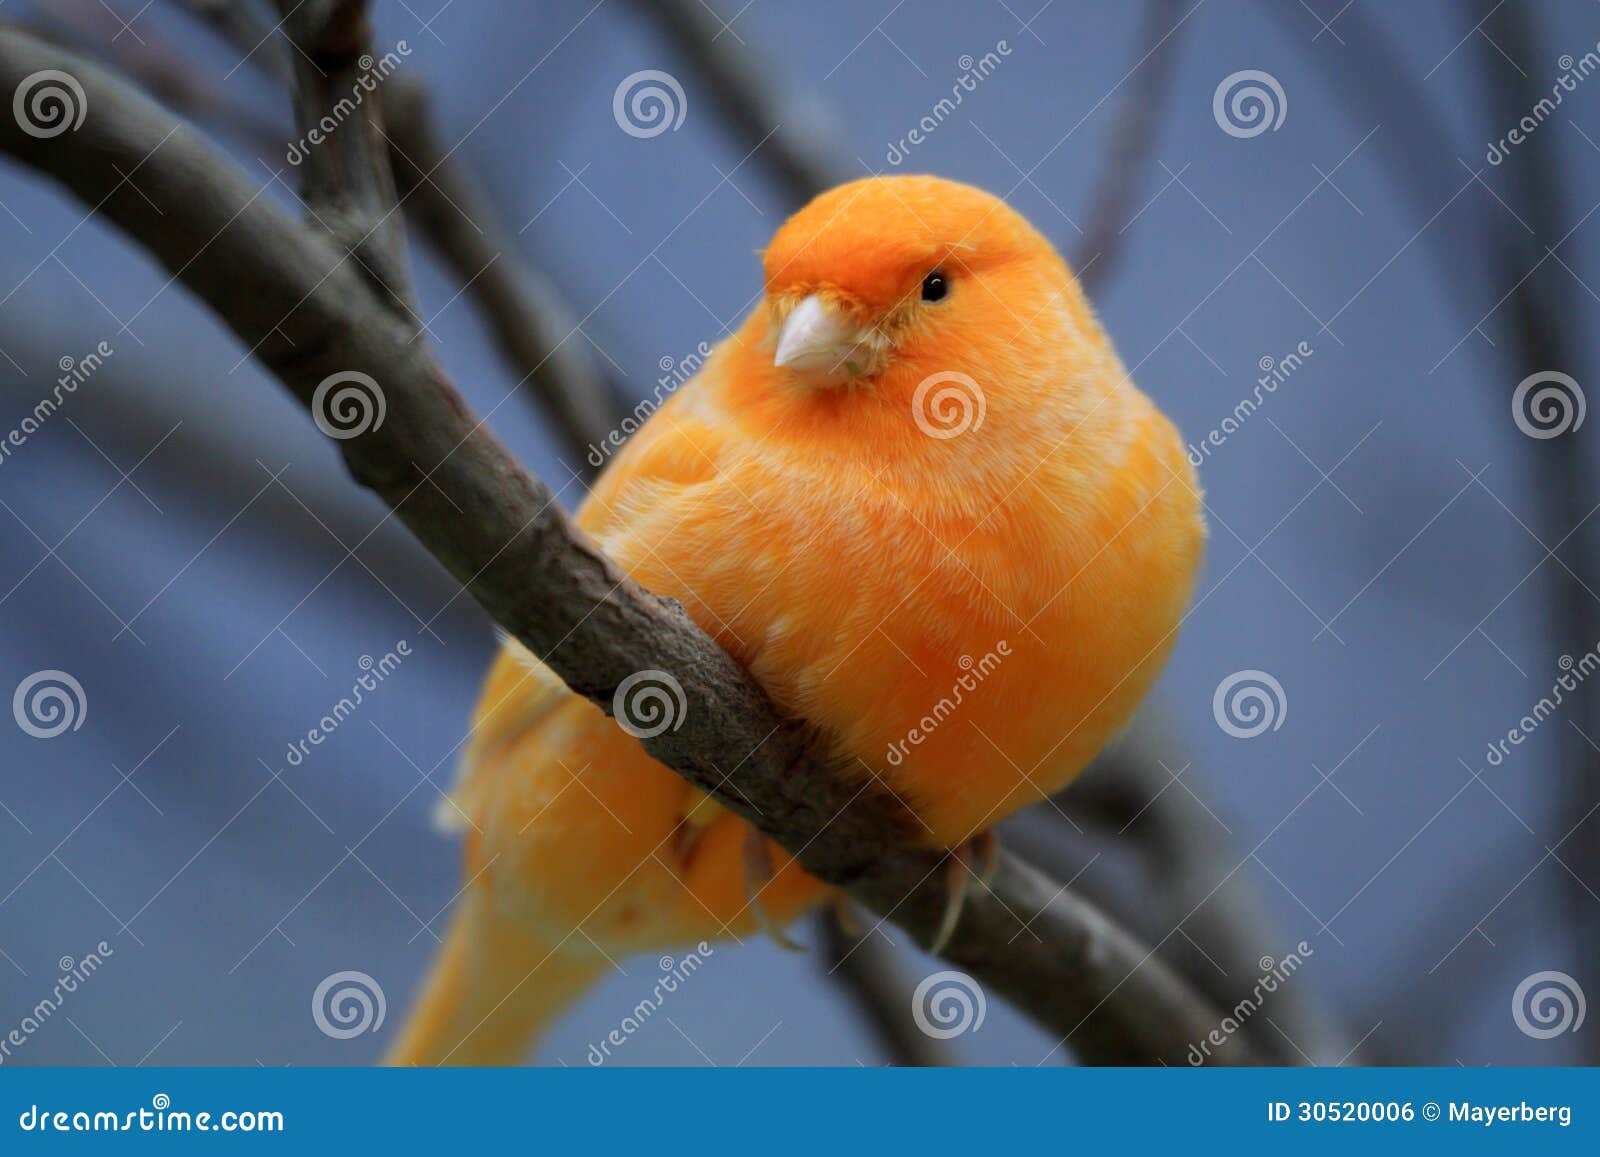 orange canary